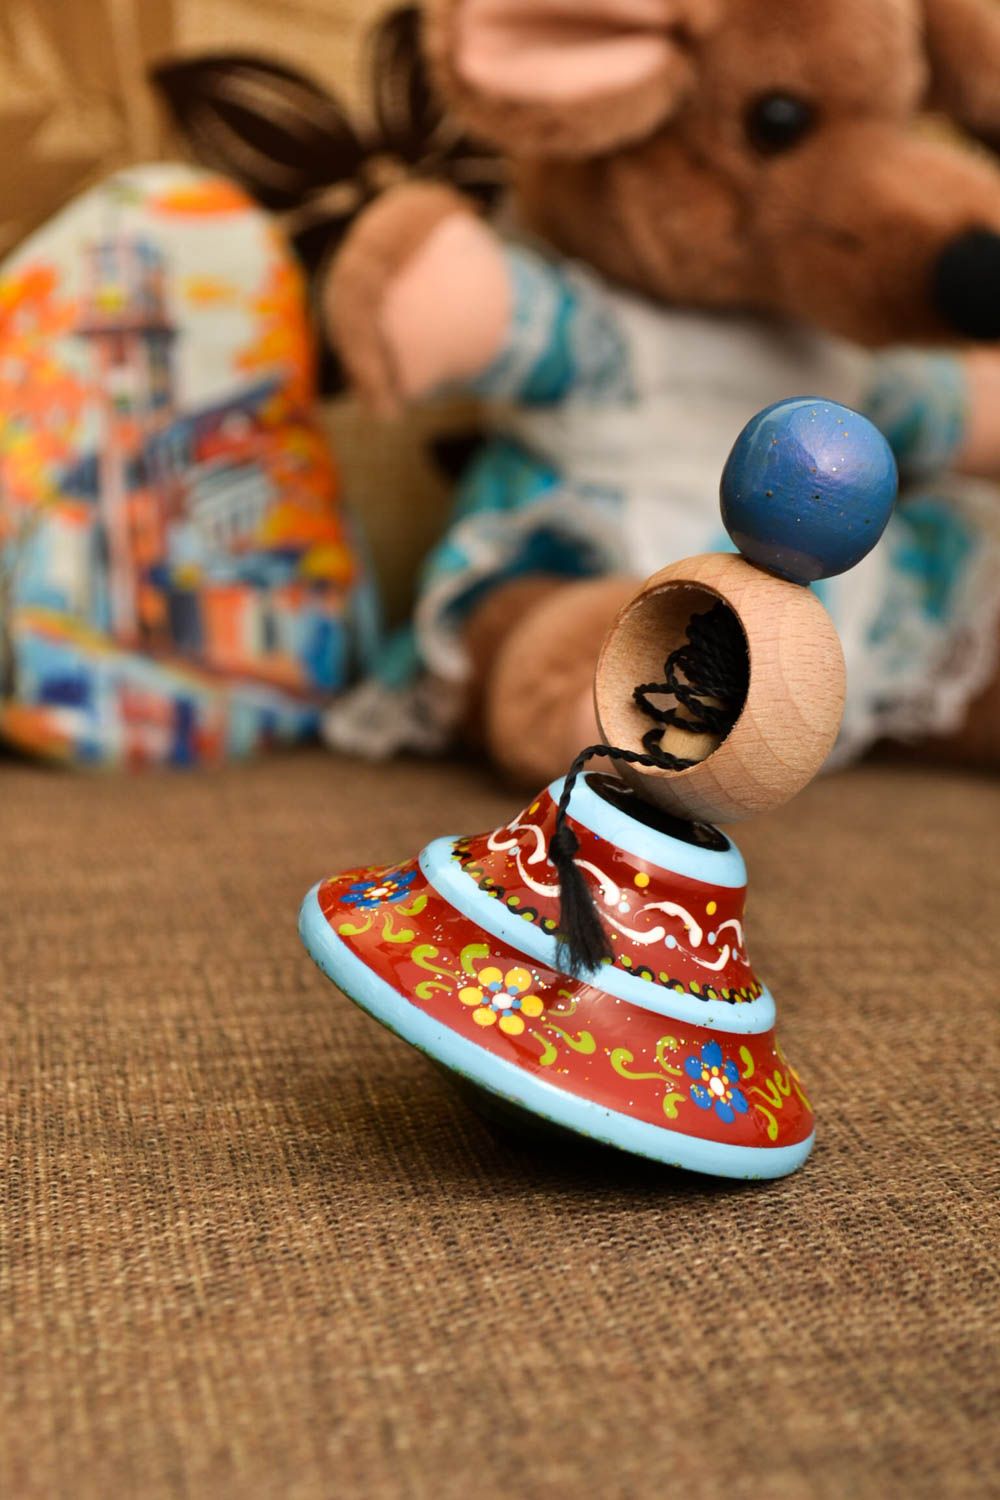 Игрушка ручной работы детская юла игрушка из дерева авторская красивая фото 1